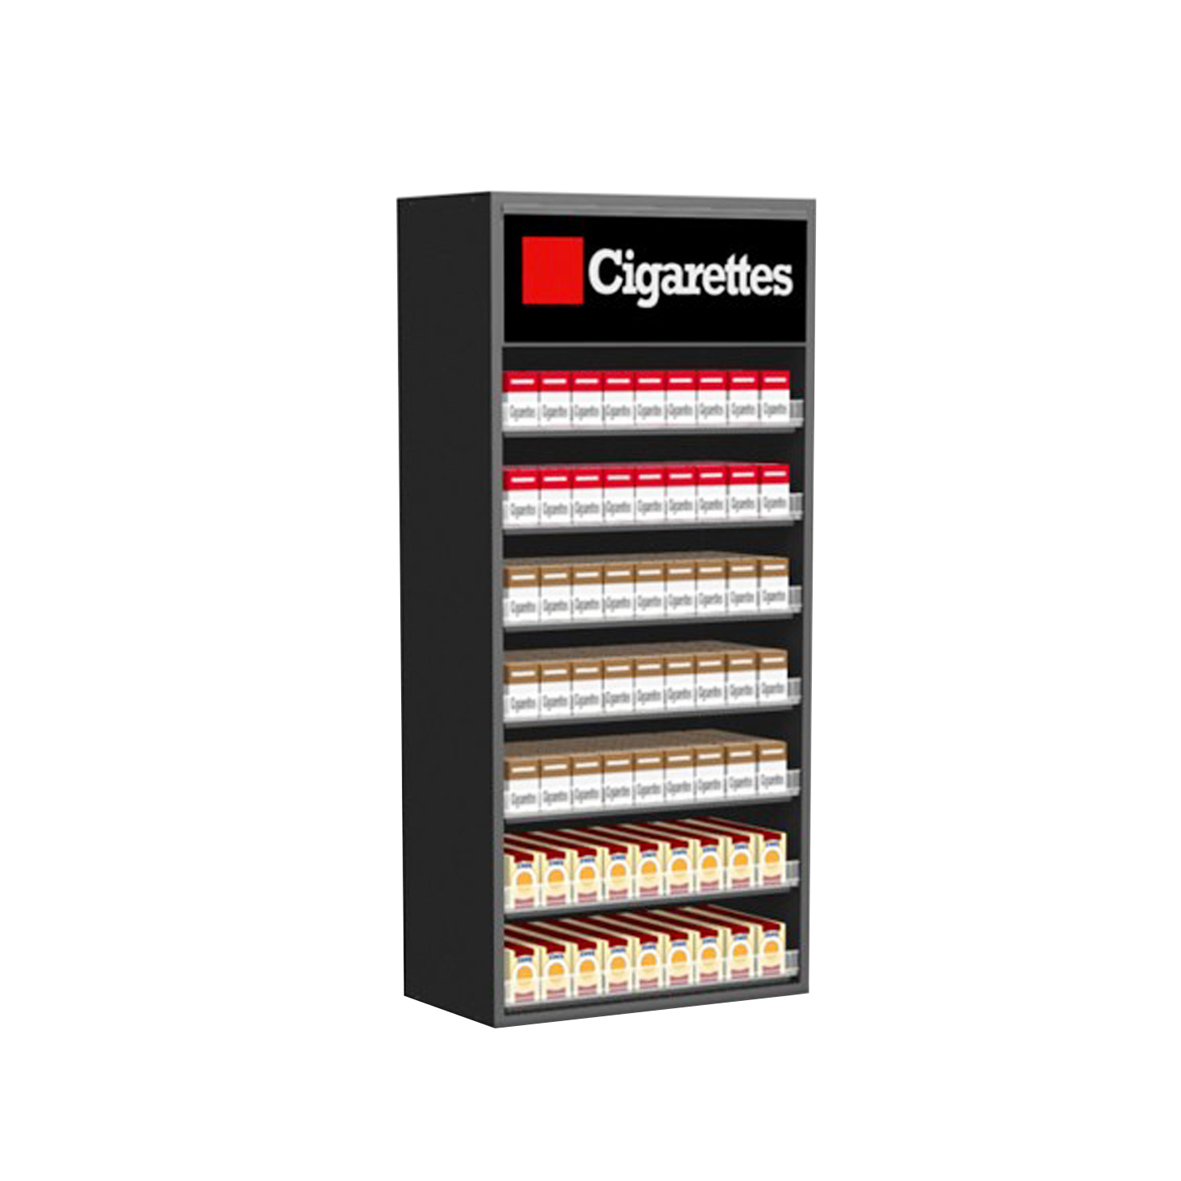 I-Loor Acrylic floor Cigarette Display shelf enezityhala kunye nelogo